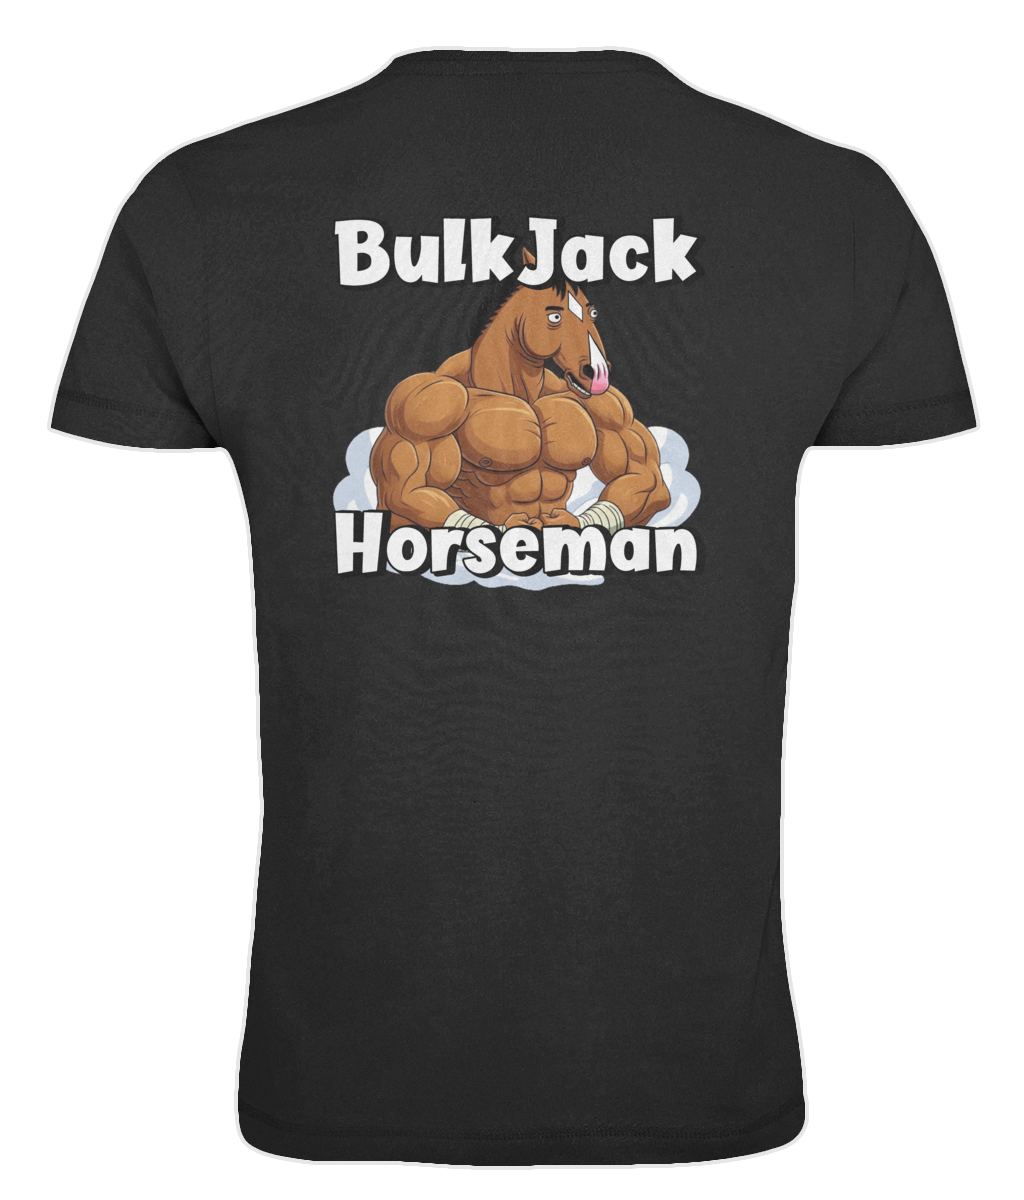 "BulkJack Horseman" - Oversized T-shirt